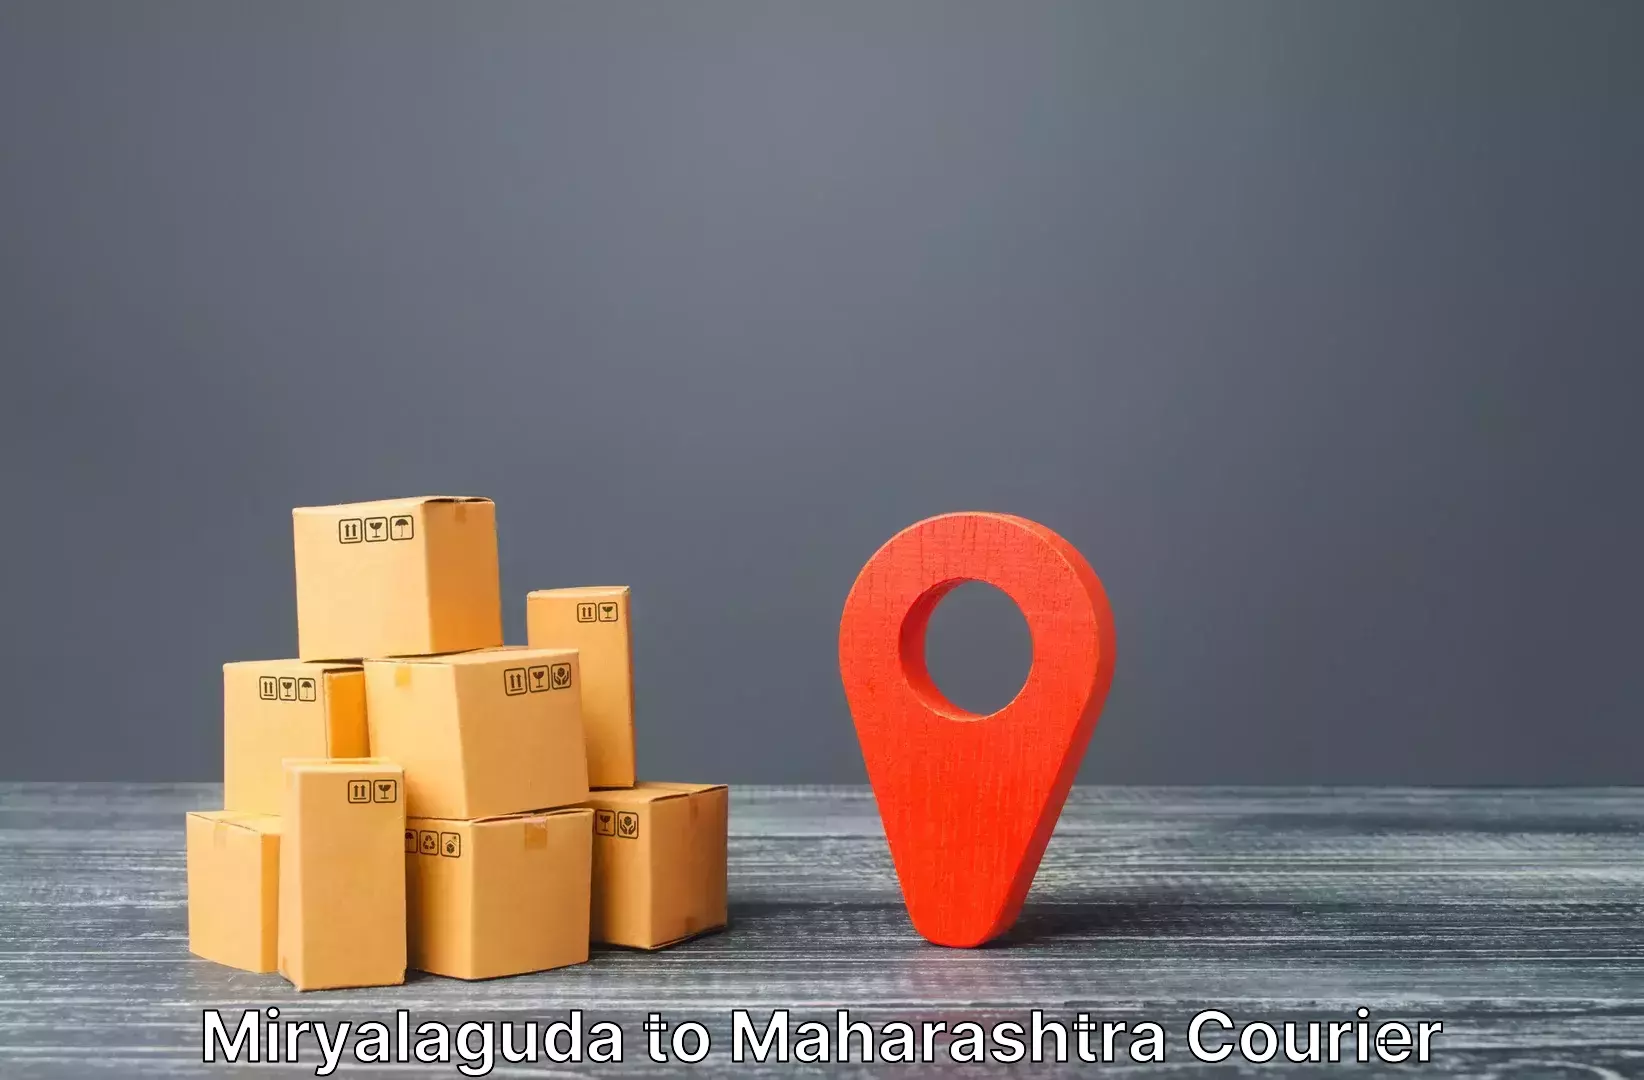 Round trip baggage courier in Miryalaguda to Mumbai